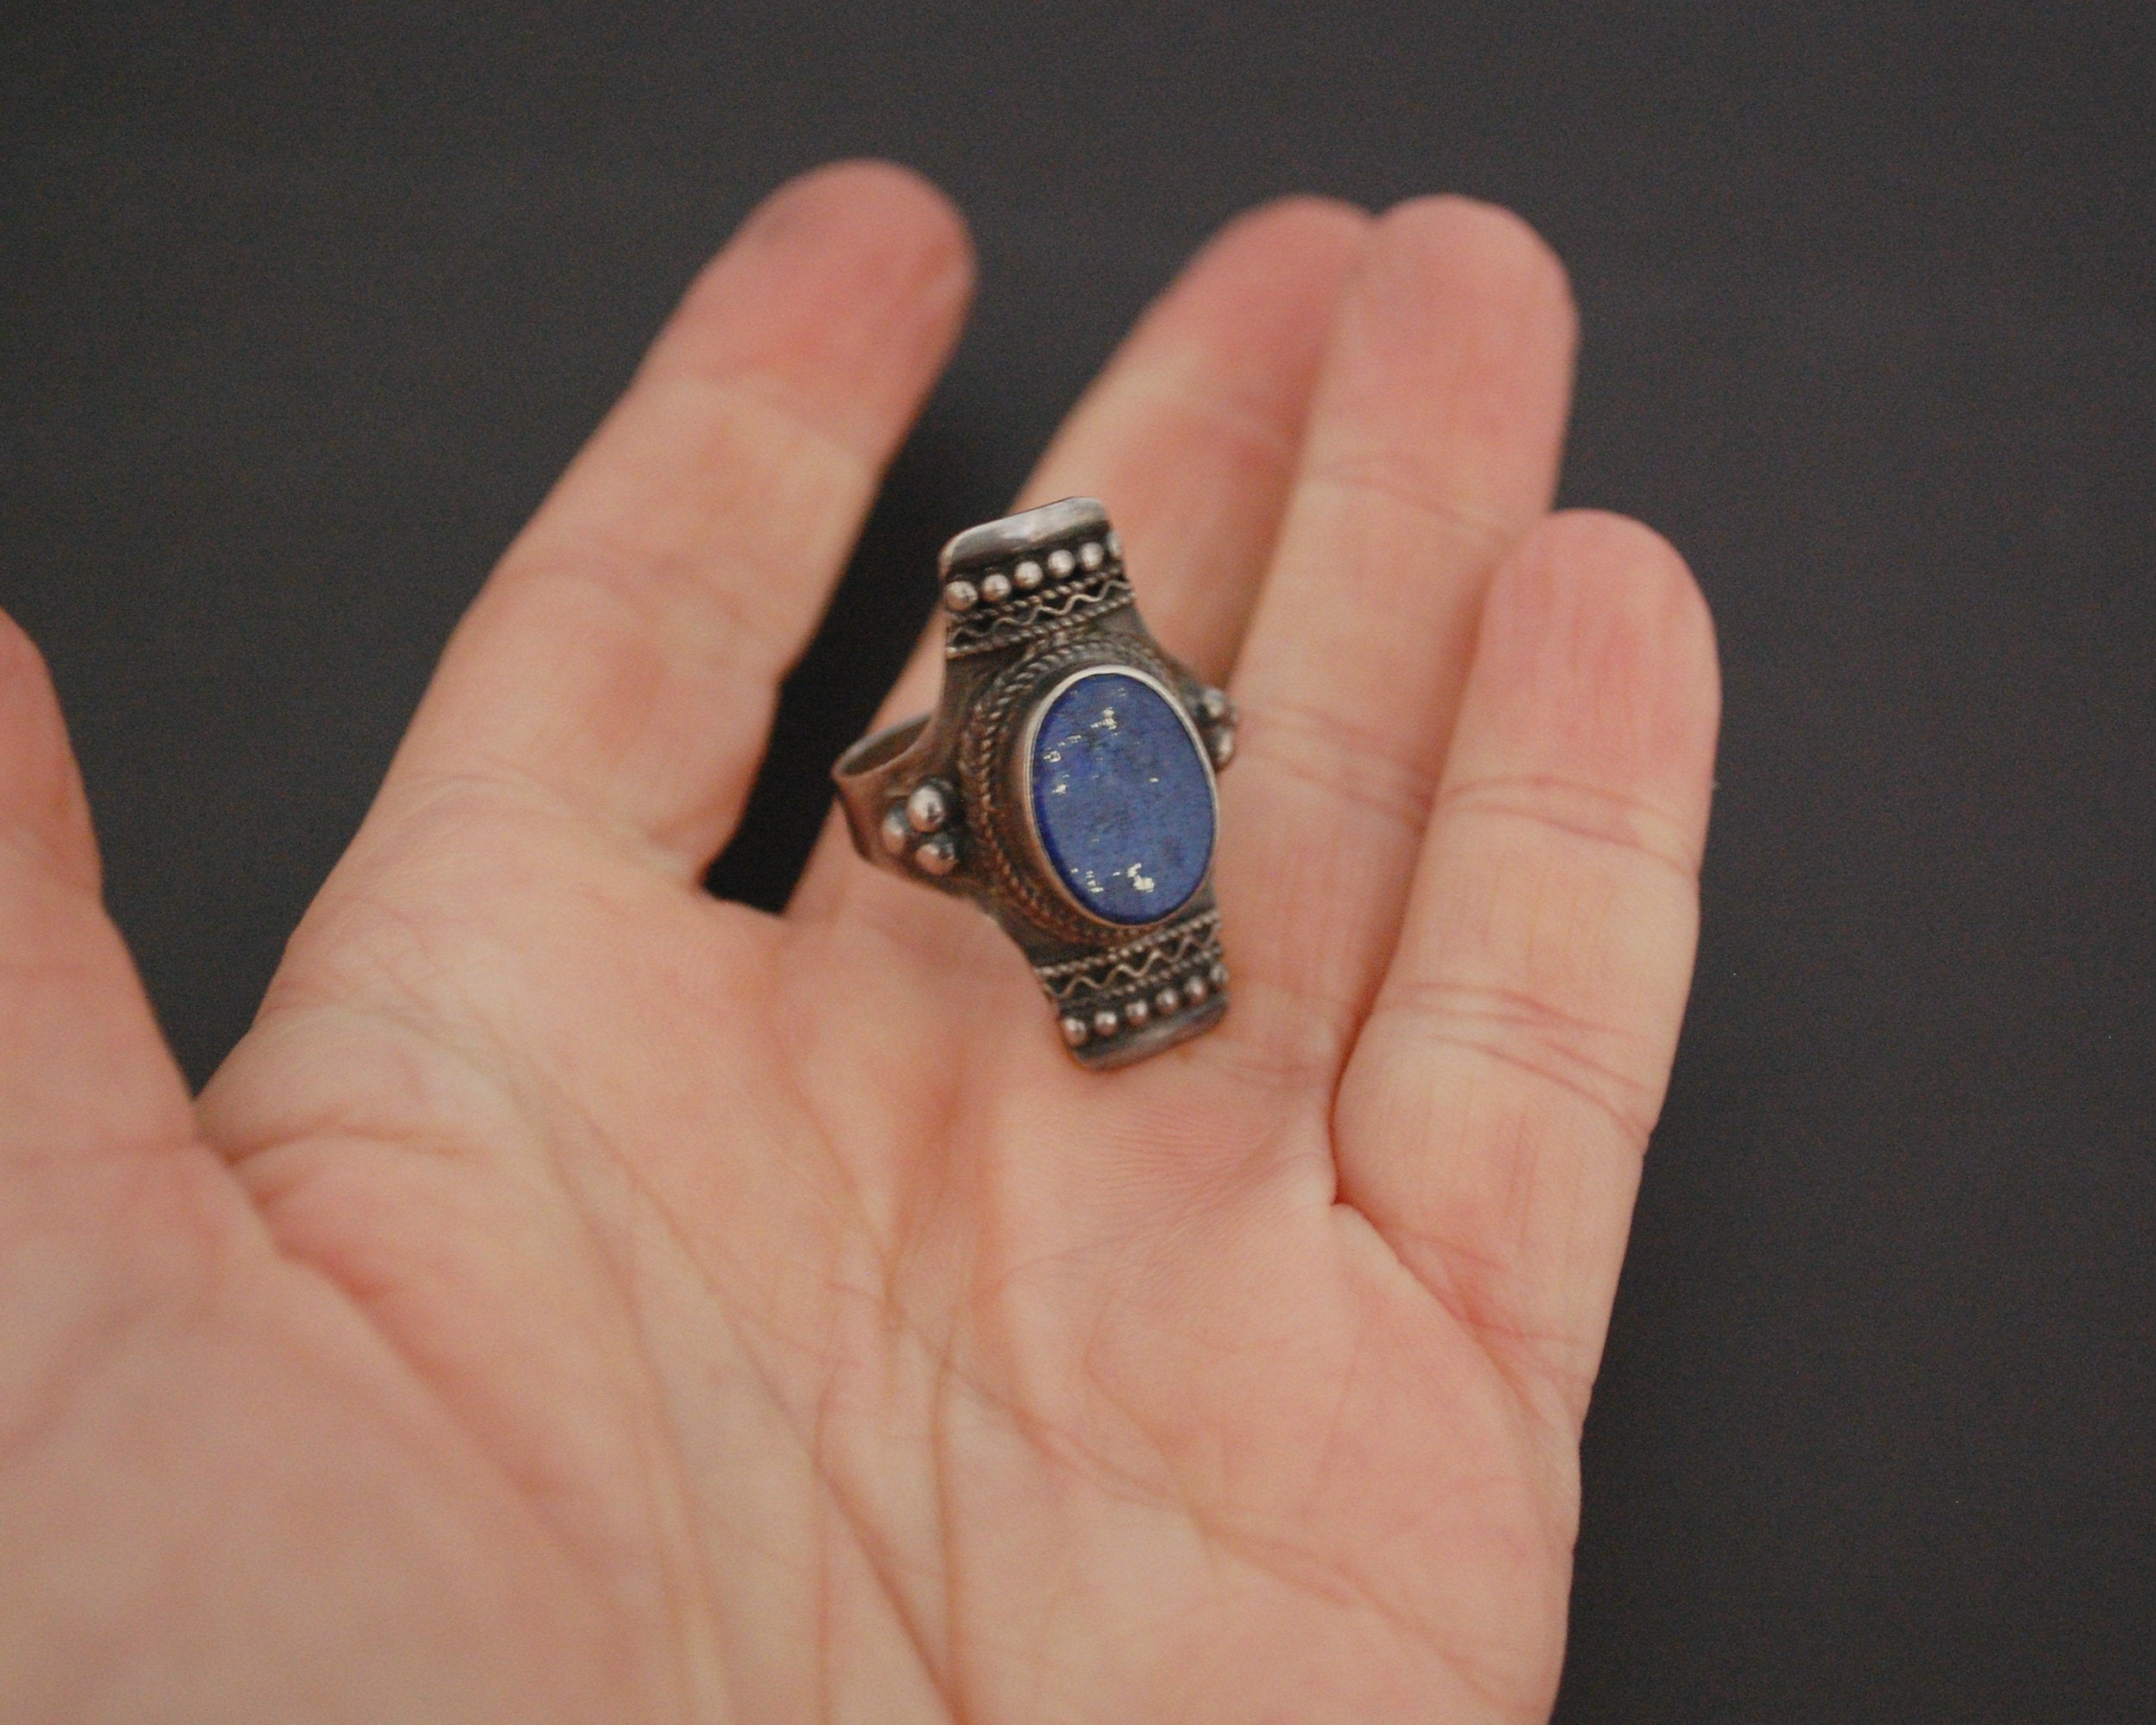 Ethnic Lapis Lazuli Ring from India - Size 8.5